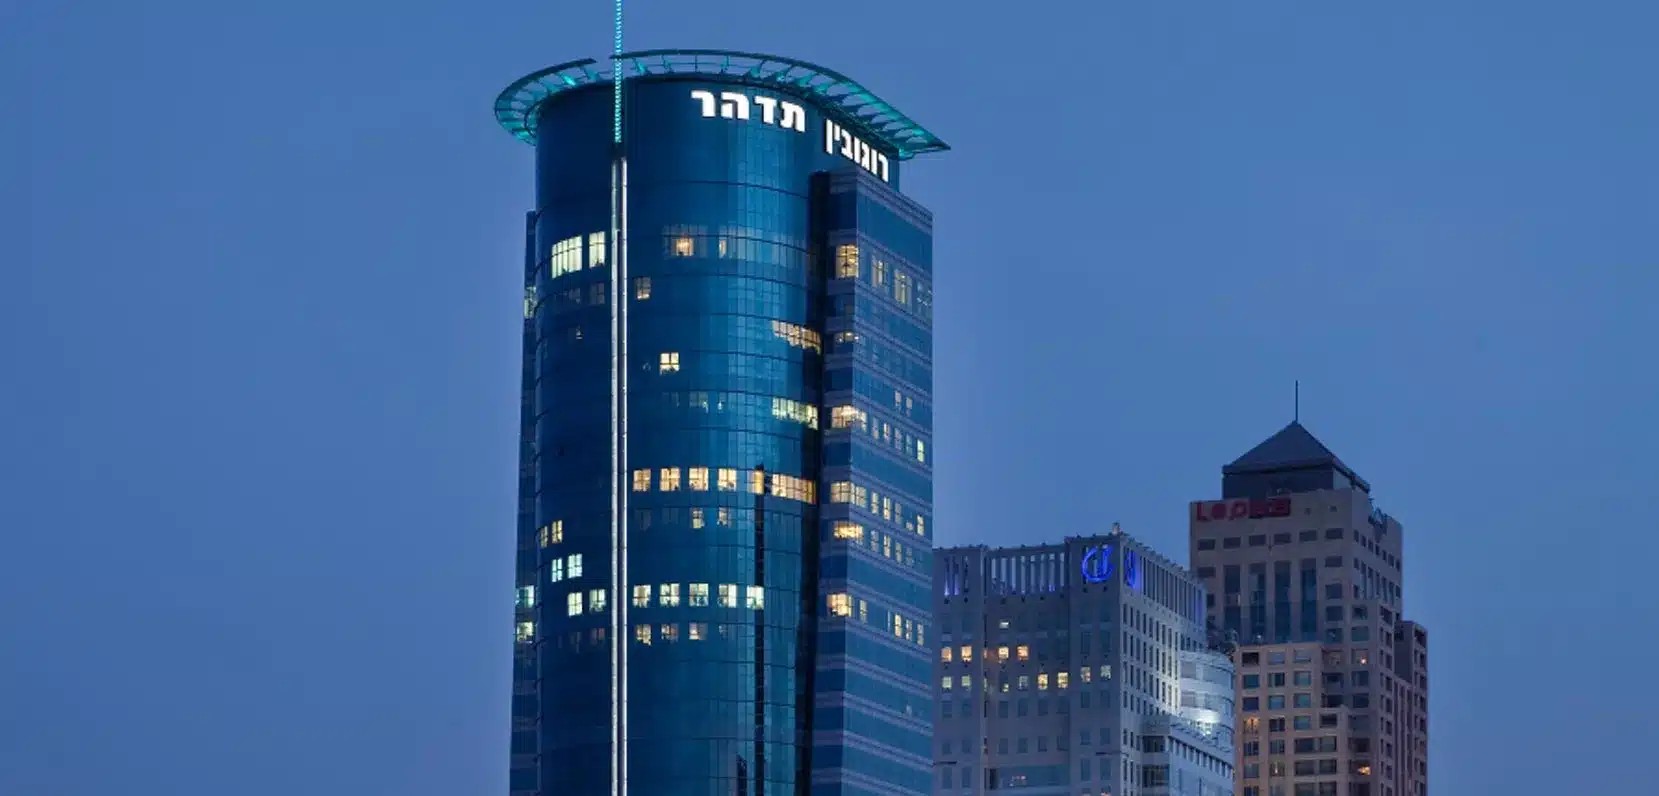 מגדל רוגובין תדהר, איילון תל אביב